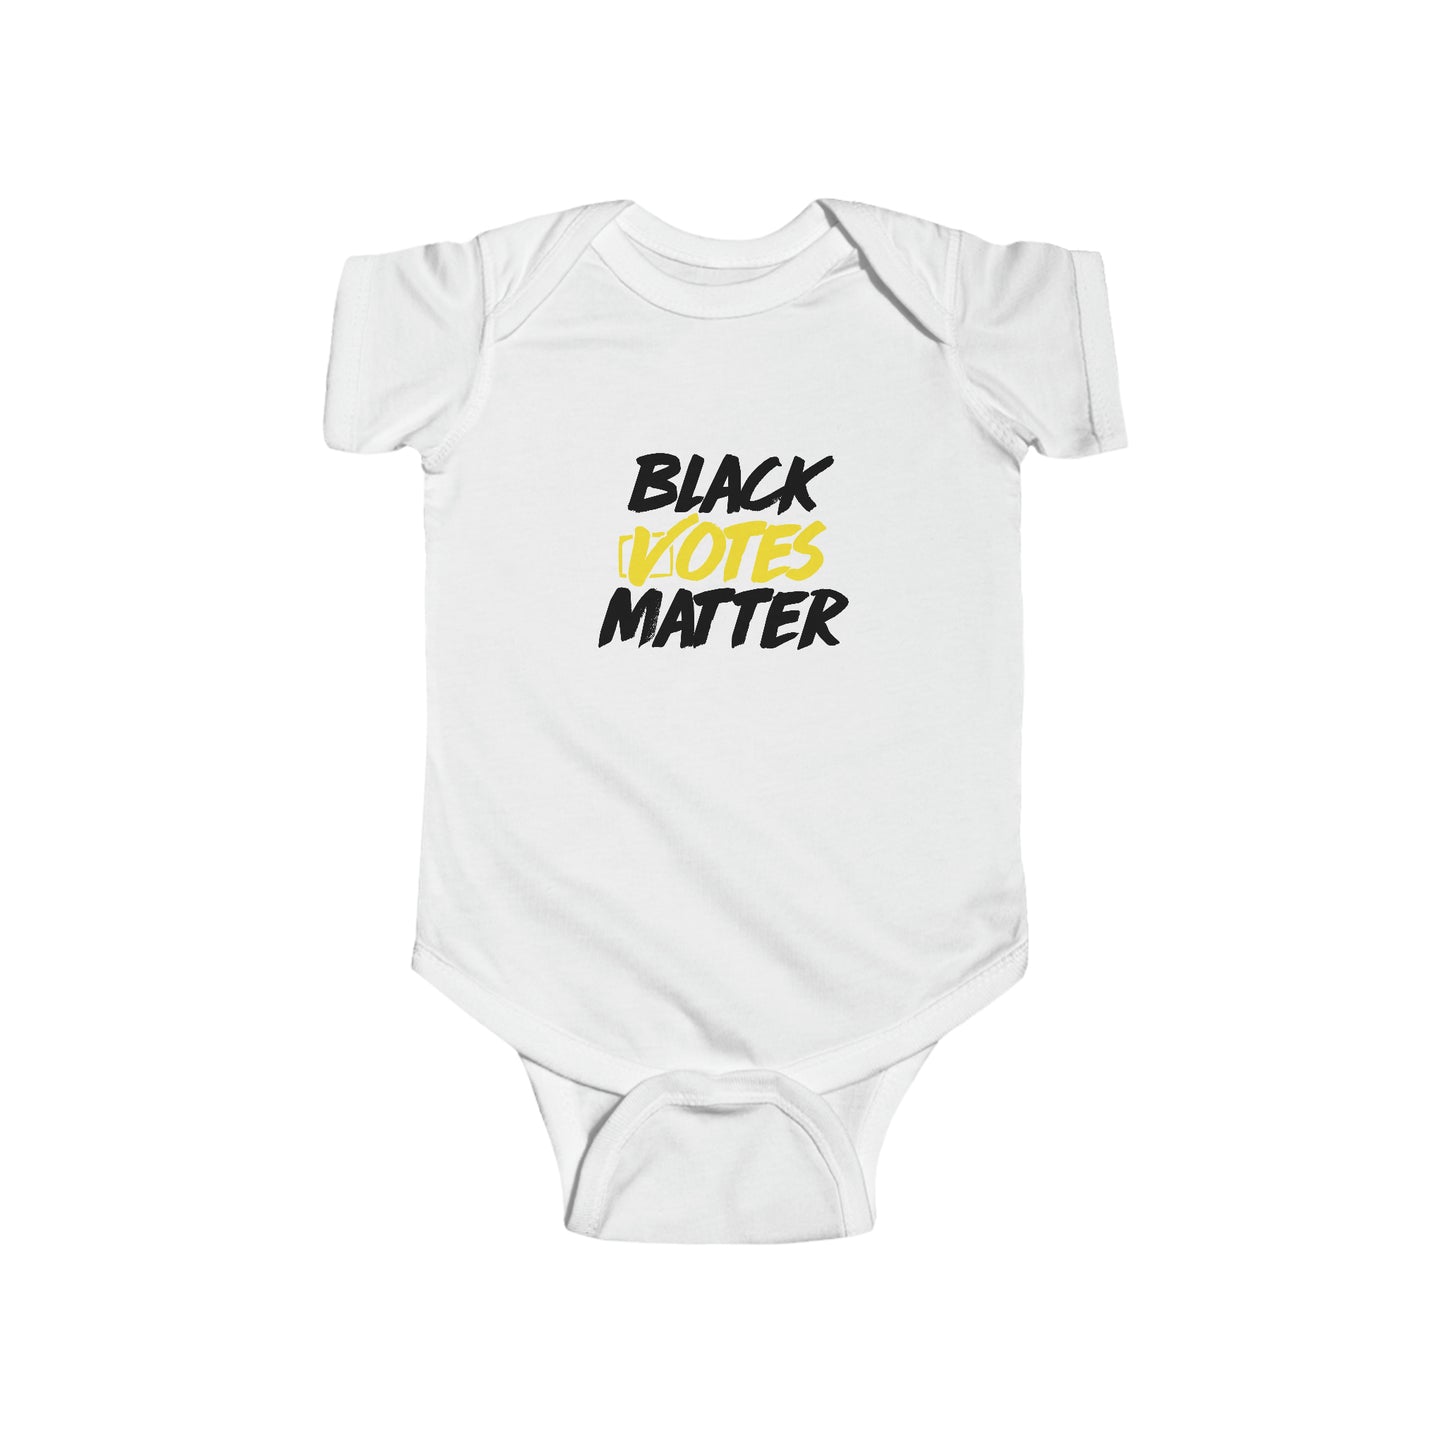 “Black Votes Matter (white text)” Infant Onesie